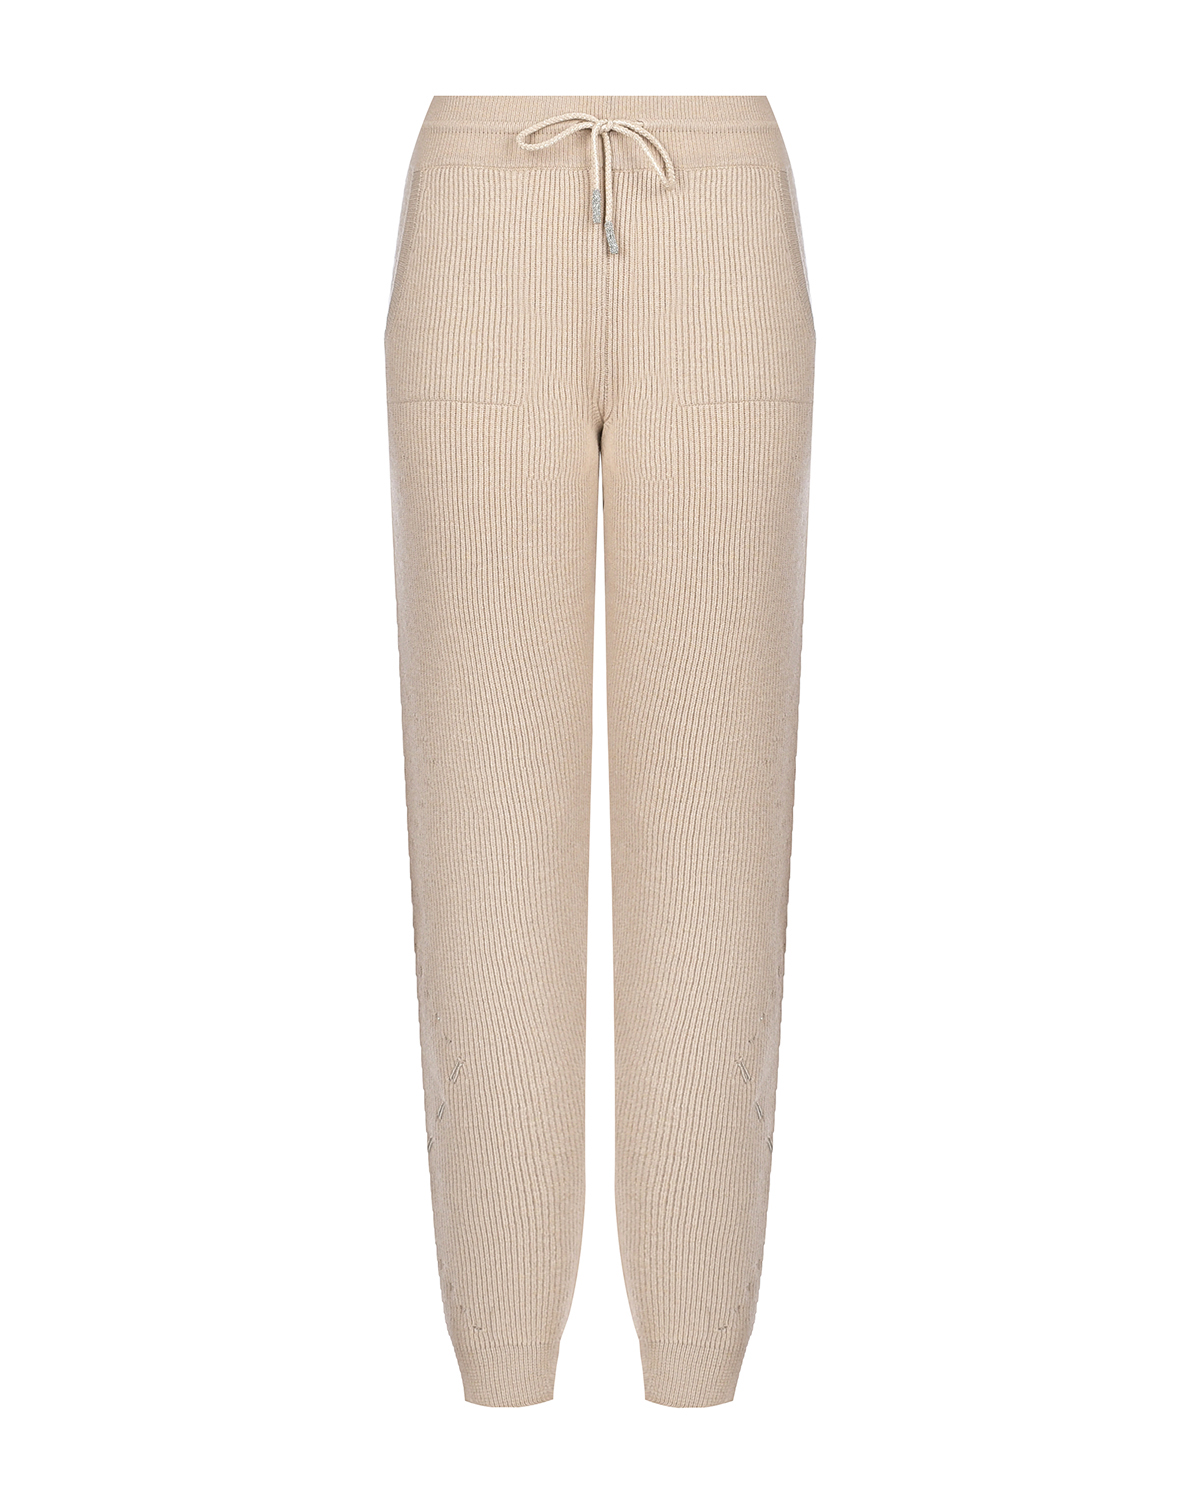 Бежевые брюки с ромбами из люрекса Panicale, размер 46, цвет бежевый - фото 1